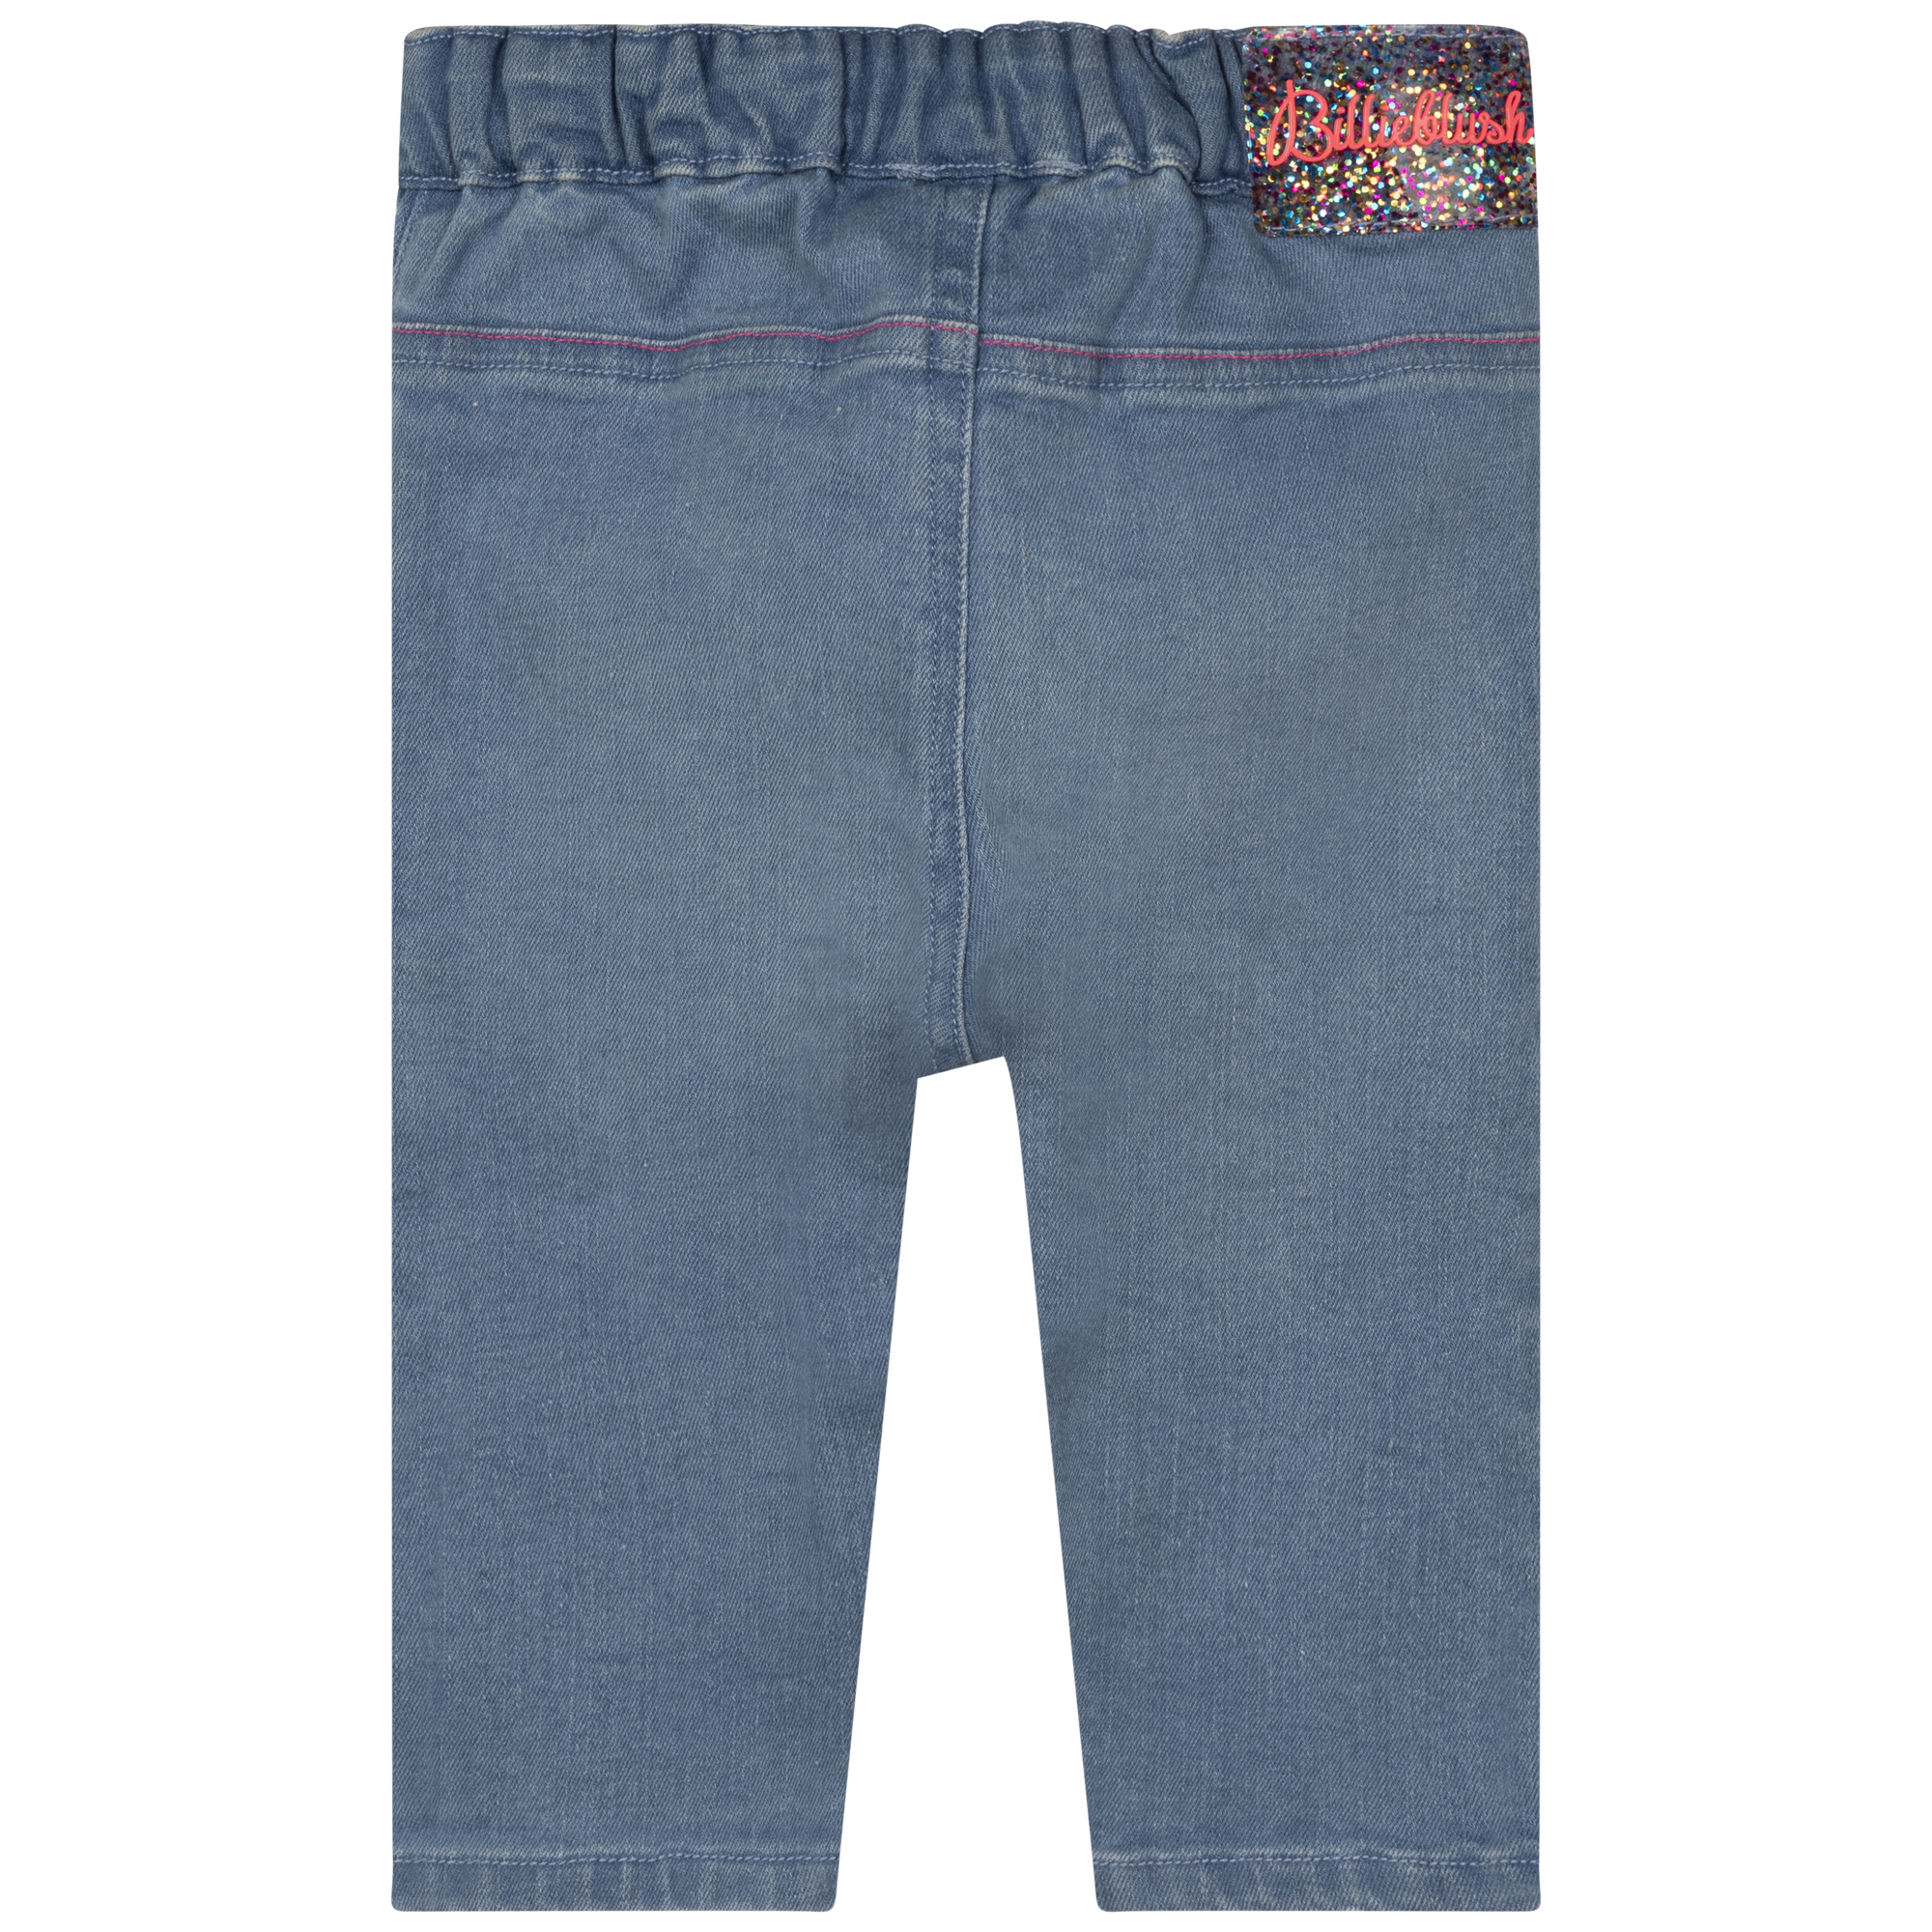 Jeans elasticizzati fiocchi BILLIEBLUSH Per BAMBINA